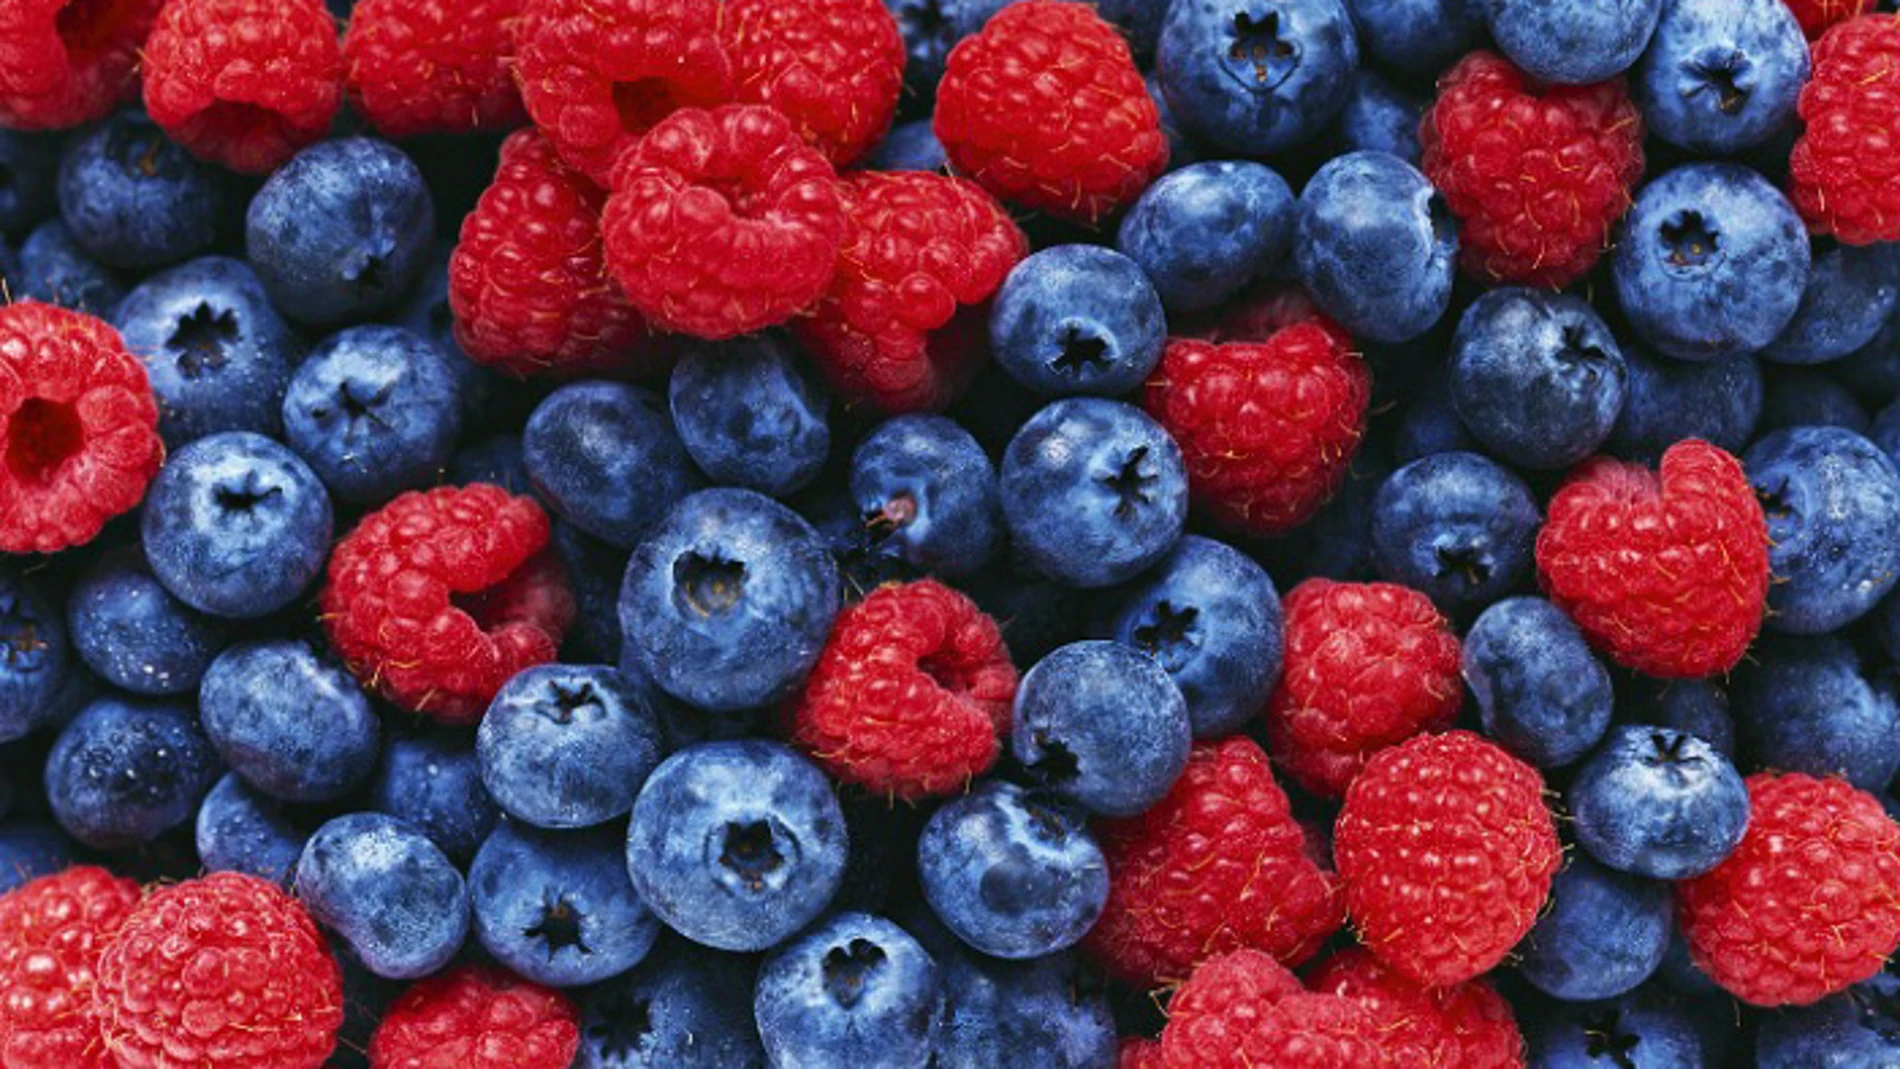 Los frutos rojos(arándanos y frambuesas, entre otros), las verduras, los pescados grasos y los cereales integrales son los principales alimentos de la dieta nórdica.